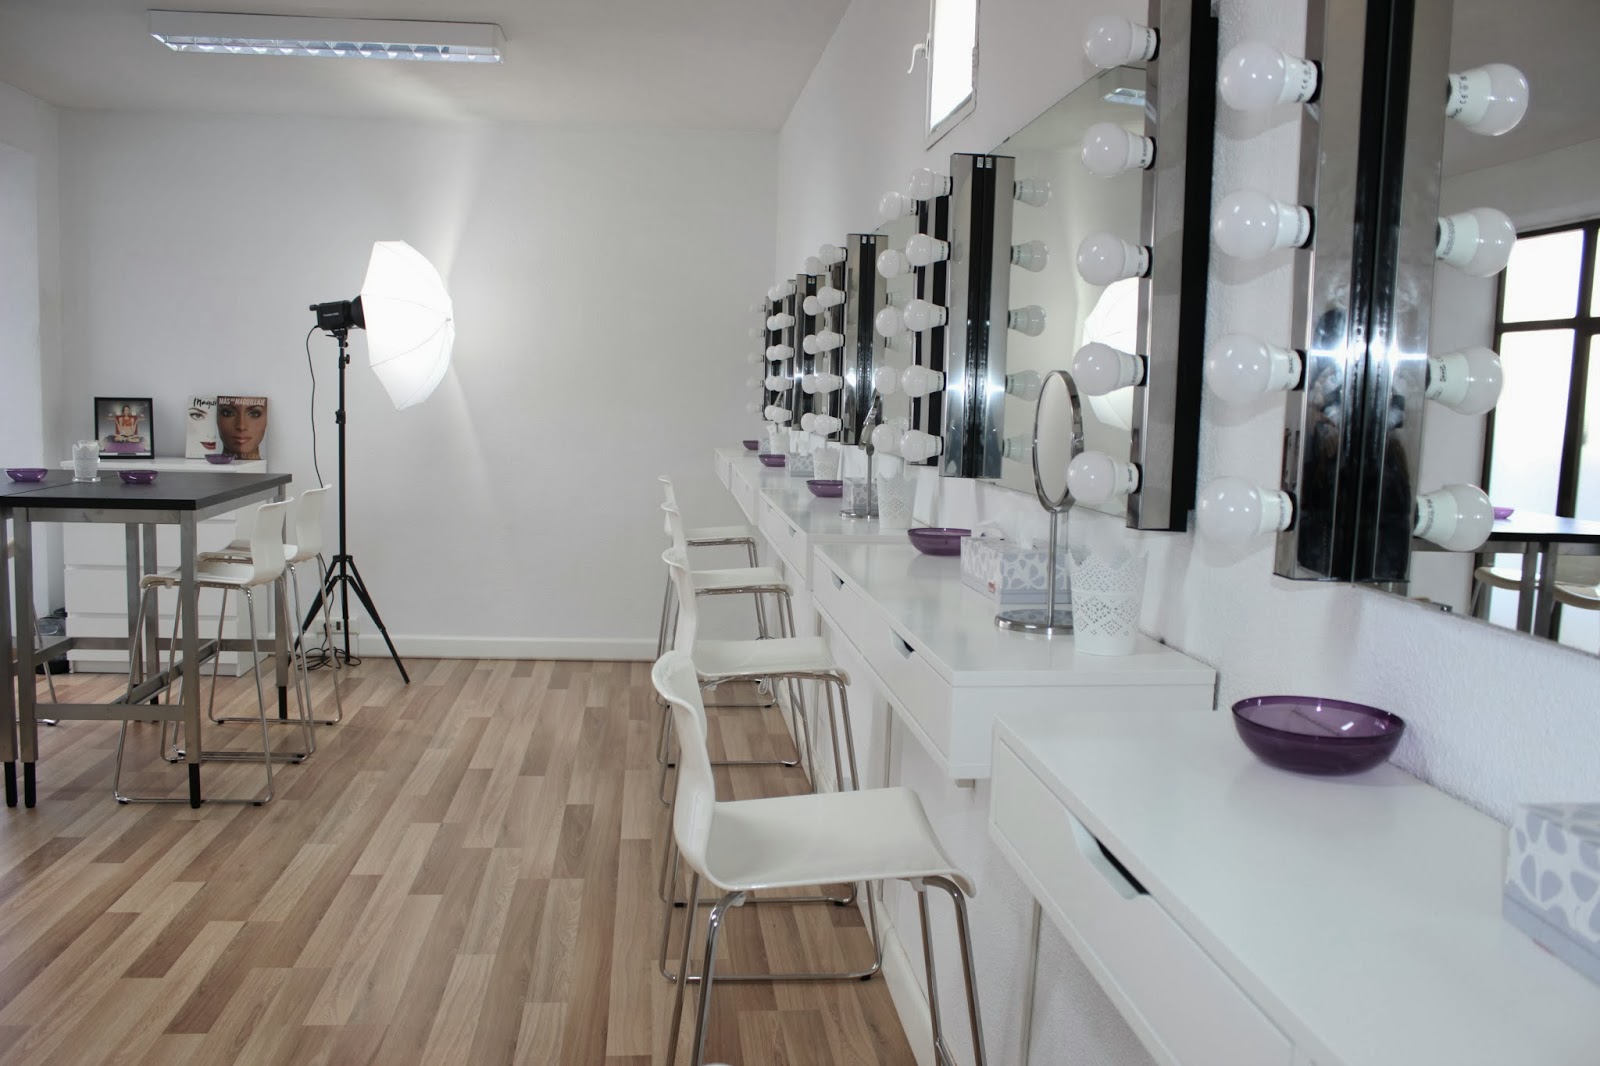 Aparichi Makeup: Blog de Maquillaje y Belleza - Maquilladora Profesional  Madrid: Qué luces poner en un tocador: la mejor luz para maquillarse